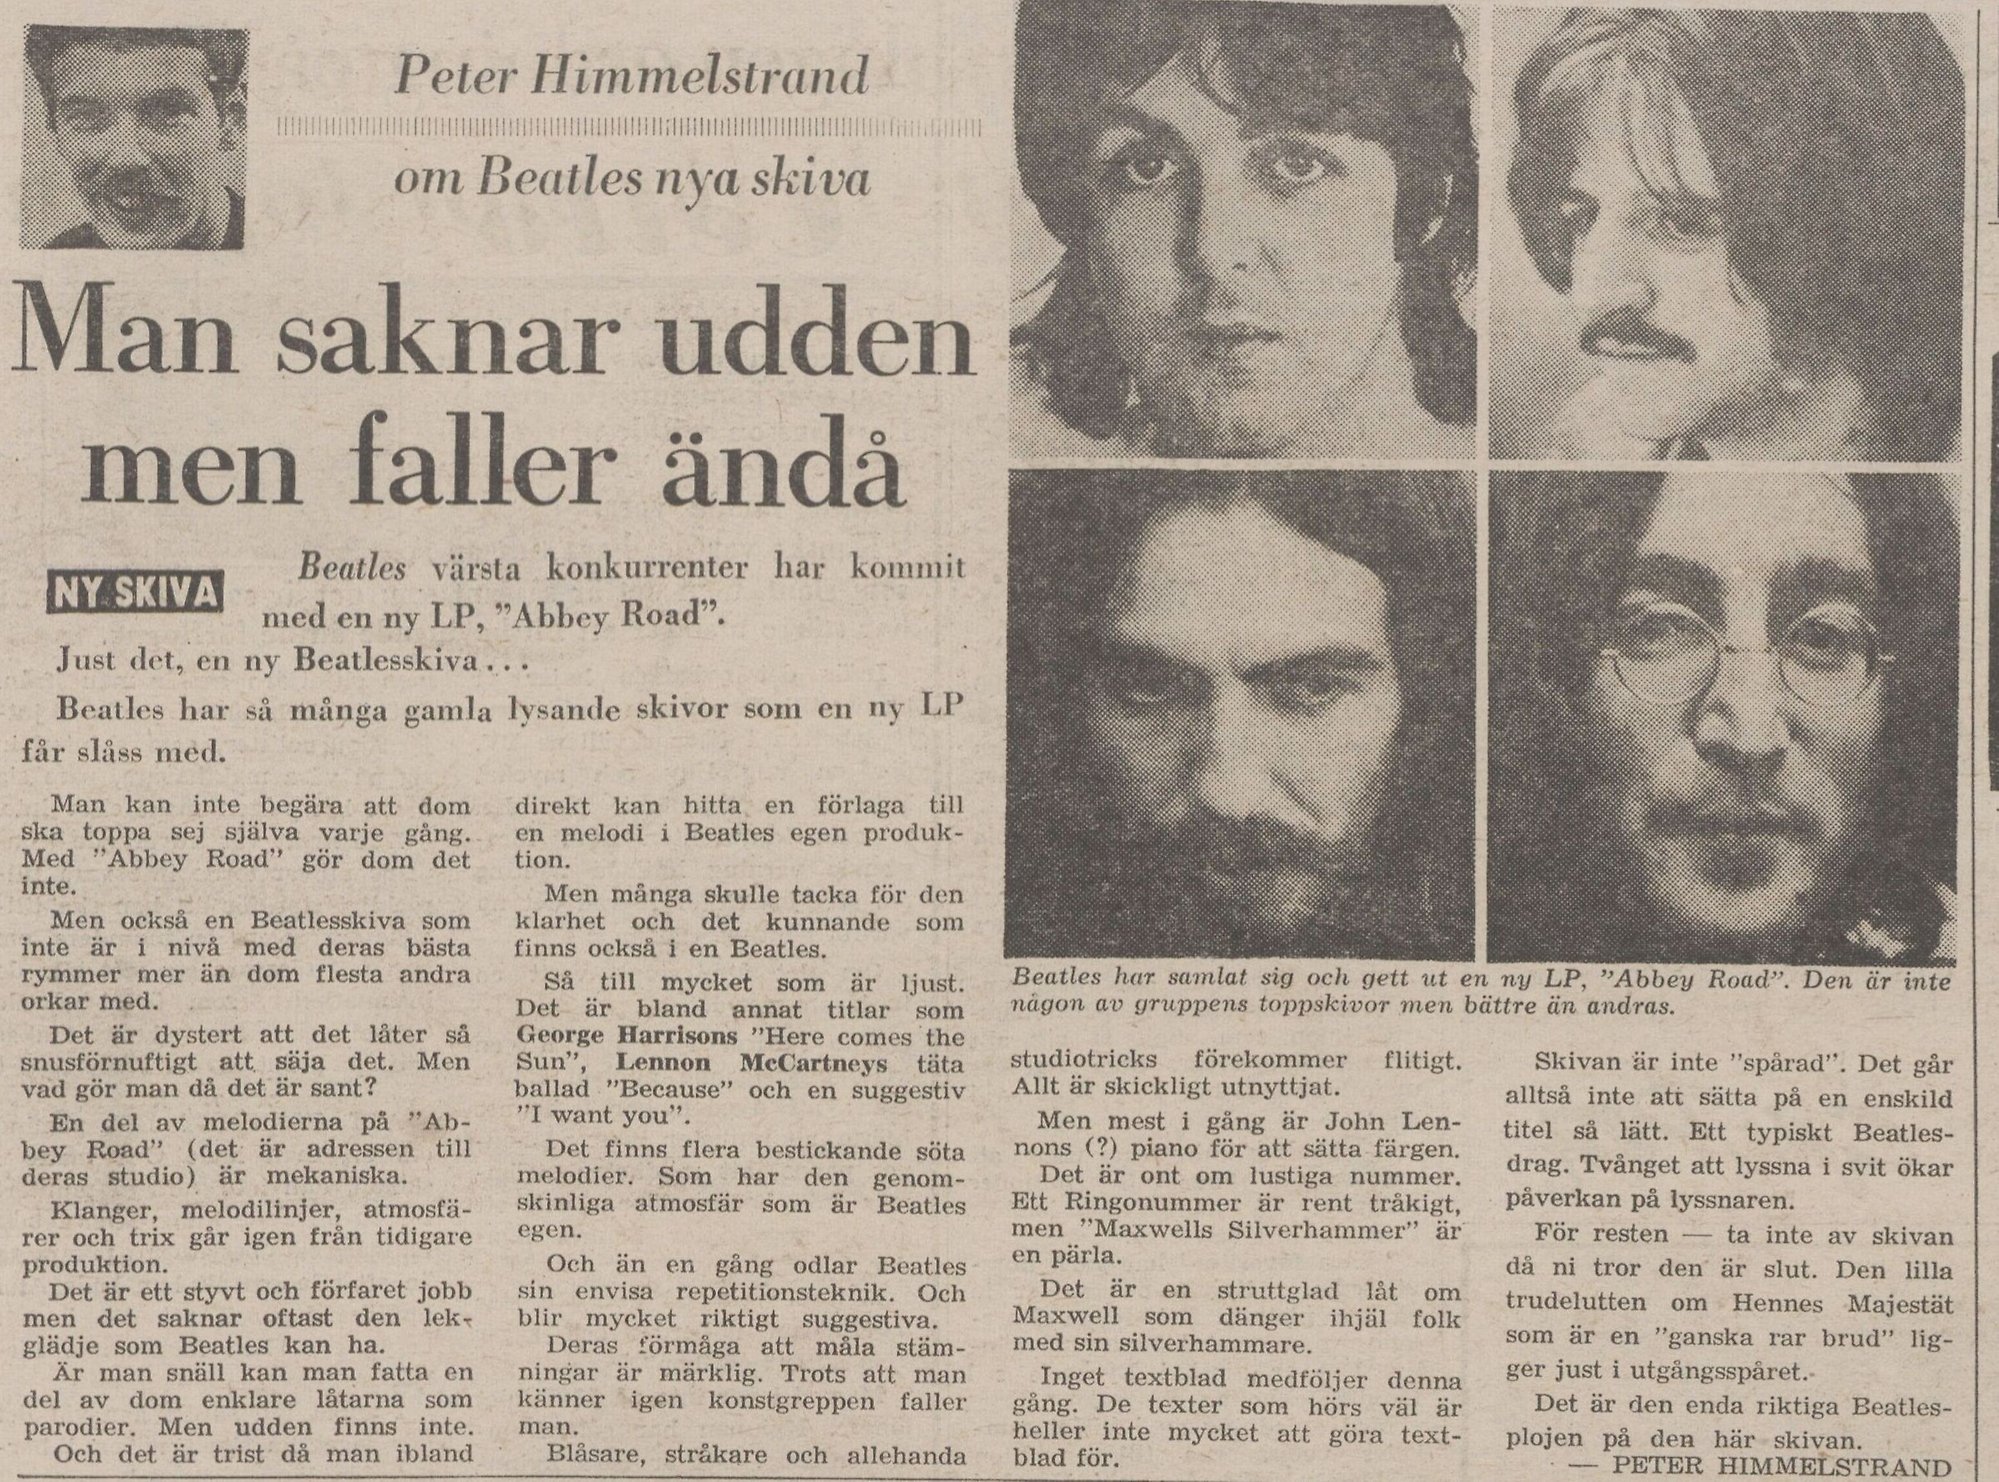 Recension av albumet. Bild av mustaschprydd Peter Himmelstrand i vänstra hörnet. I det högra infällda bilder av medlemmarna i Beatles. Paul, Ringo, George och John.